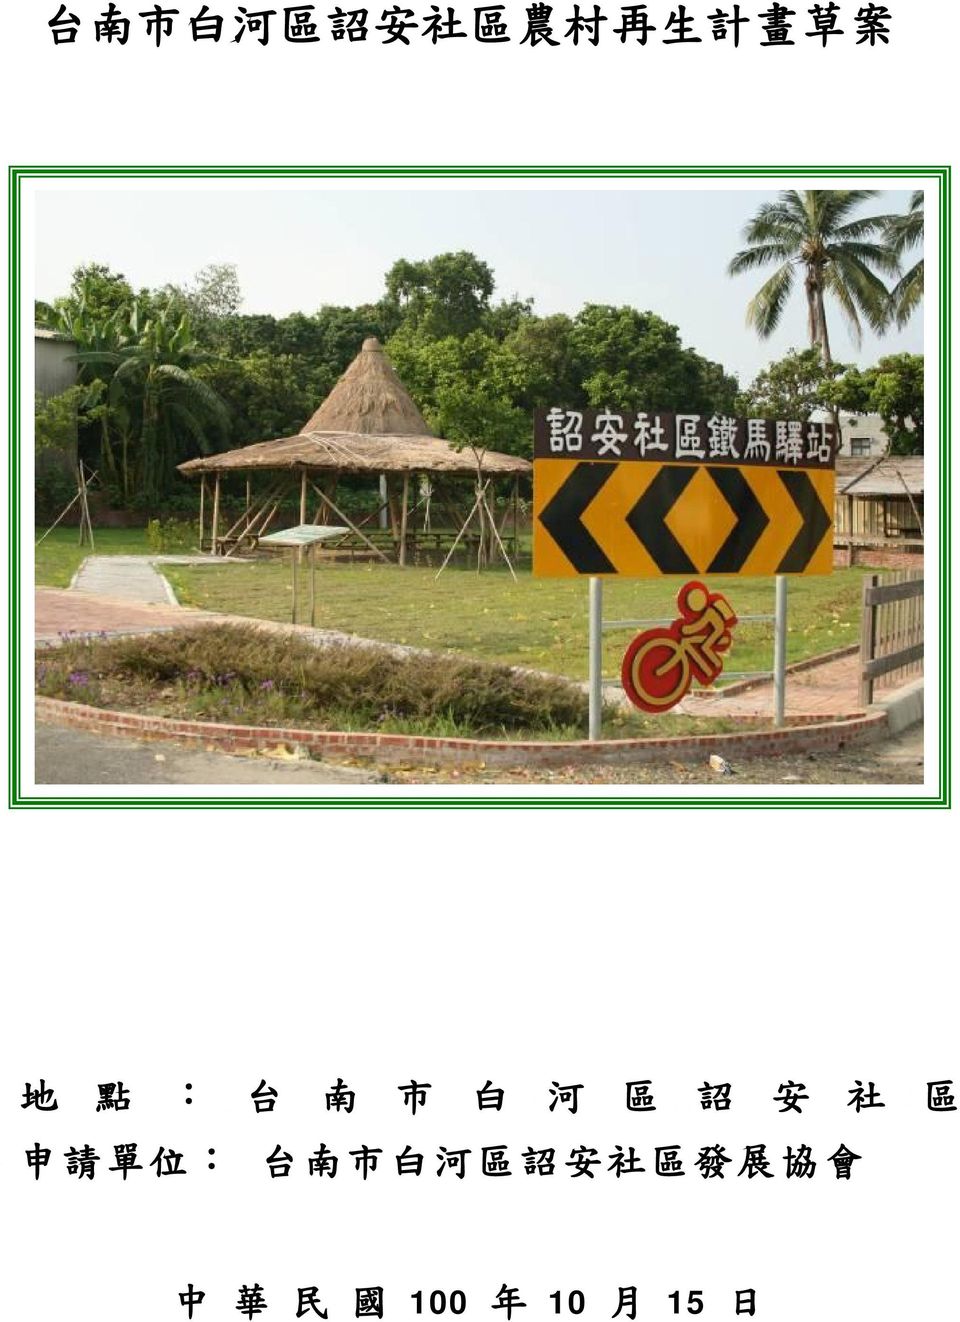 區 申 請 單 位 : 台 南 市 白 河 區 詔 安 社